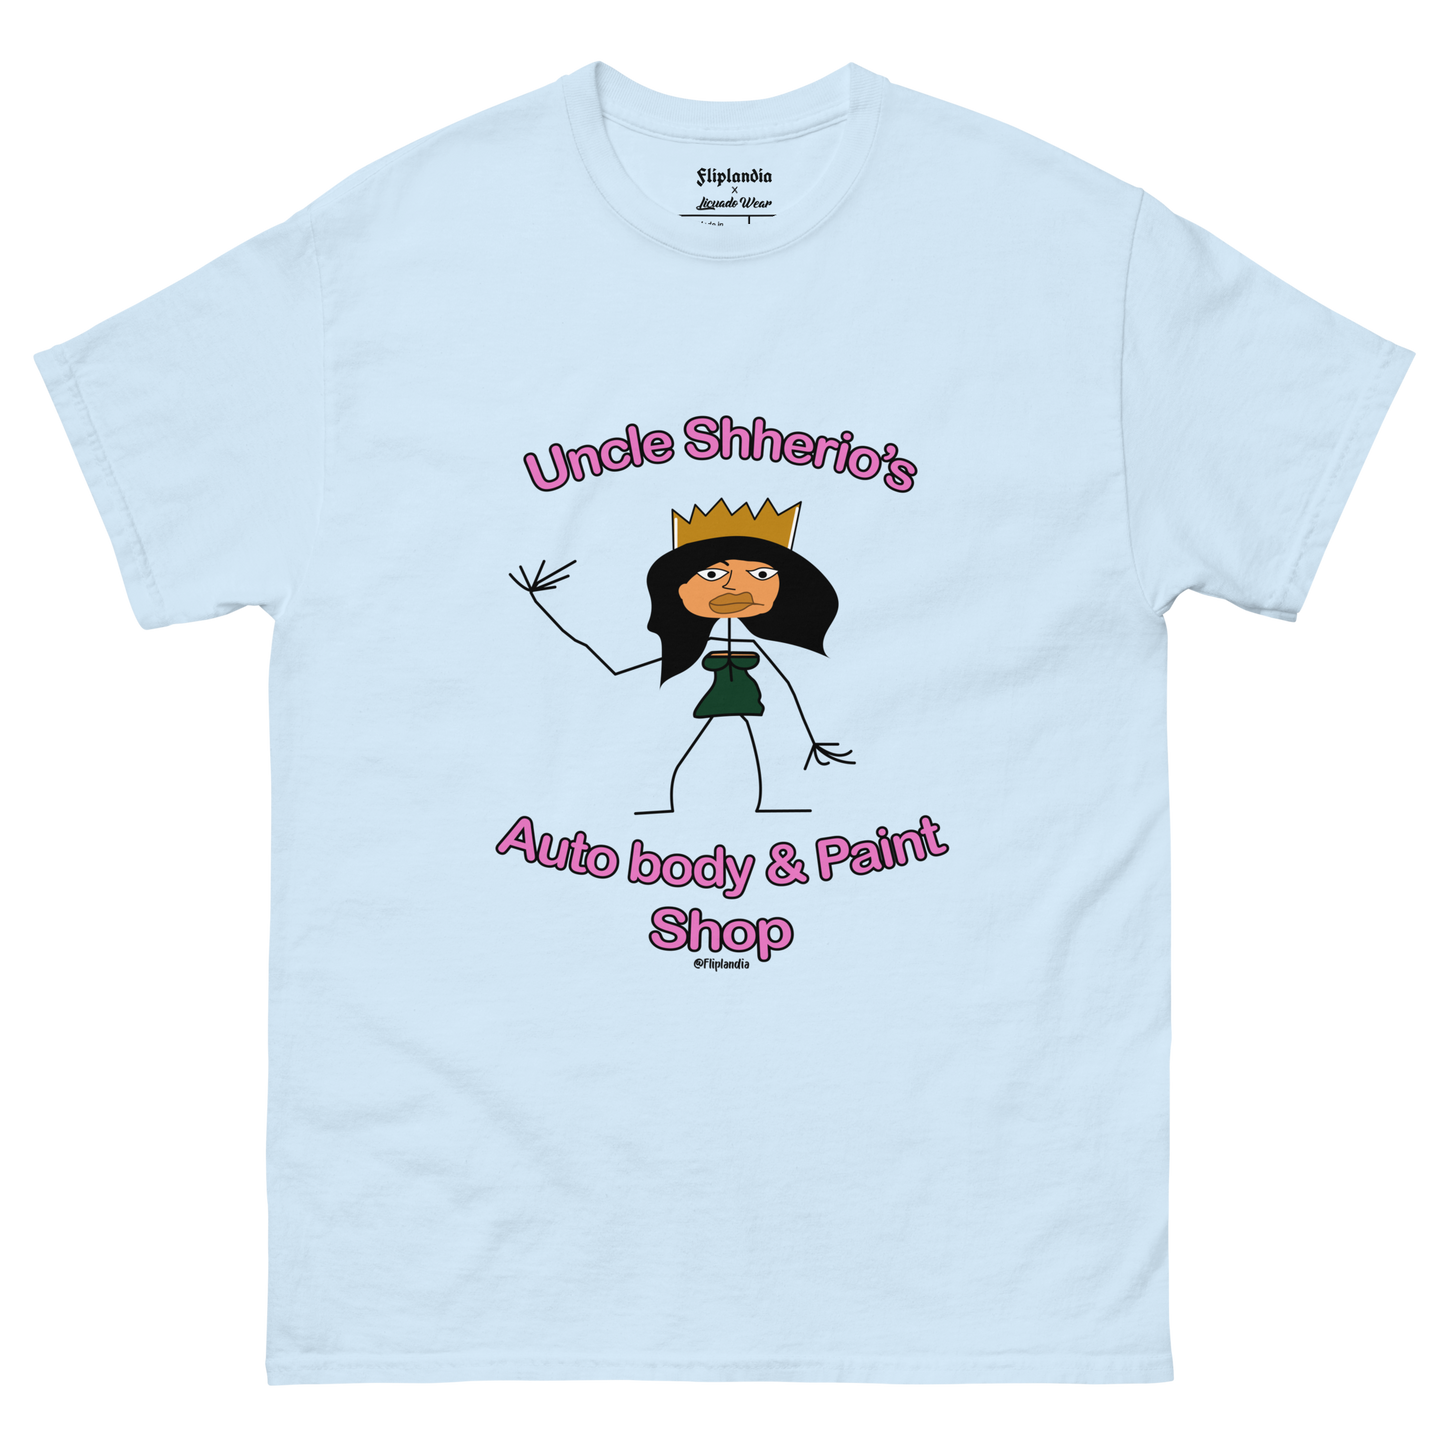 Uncle Shherio's Auto Body Shop (Aztec Princess) - Fliplandia Unisex T-shirt